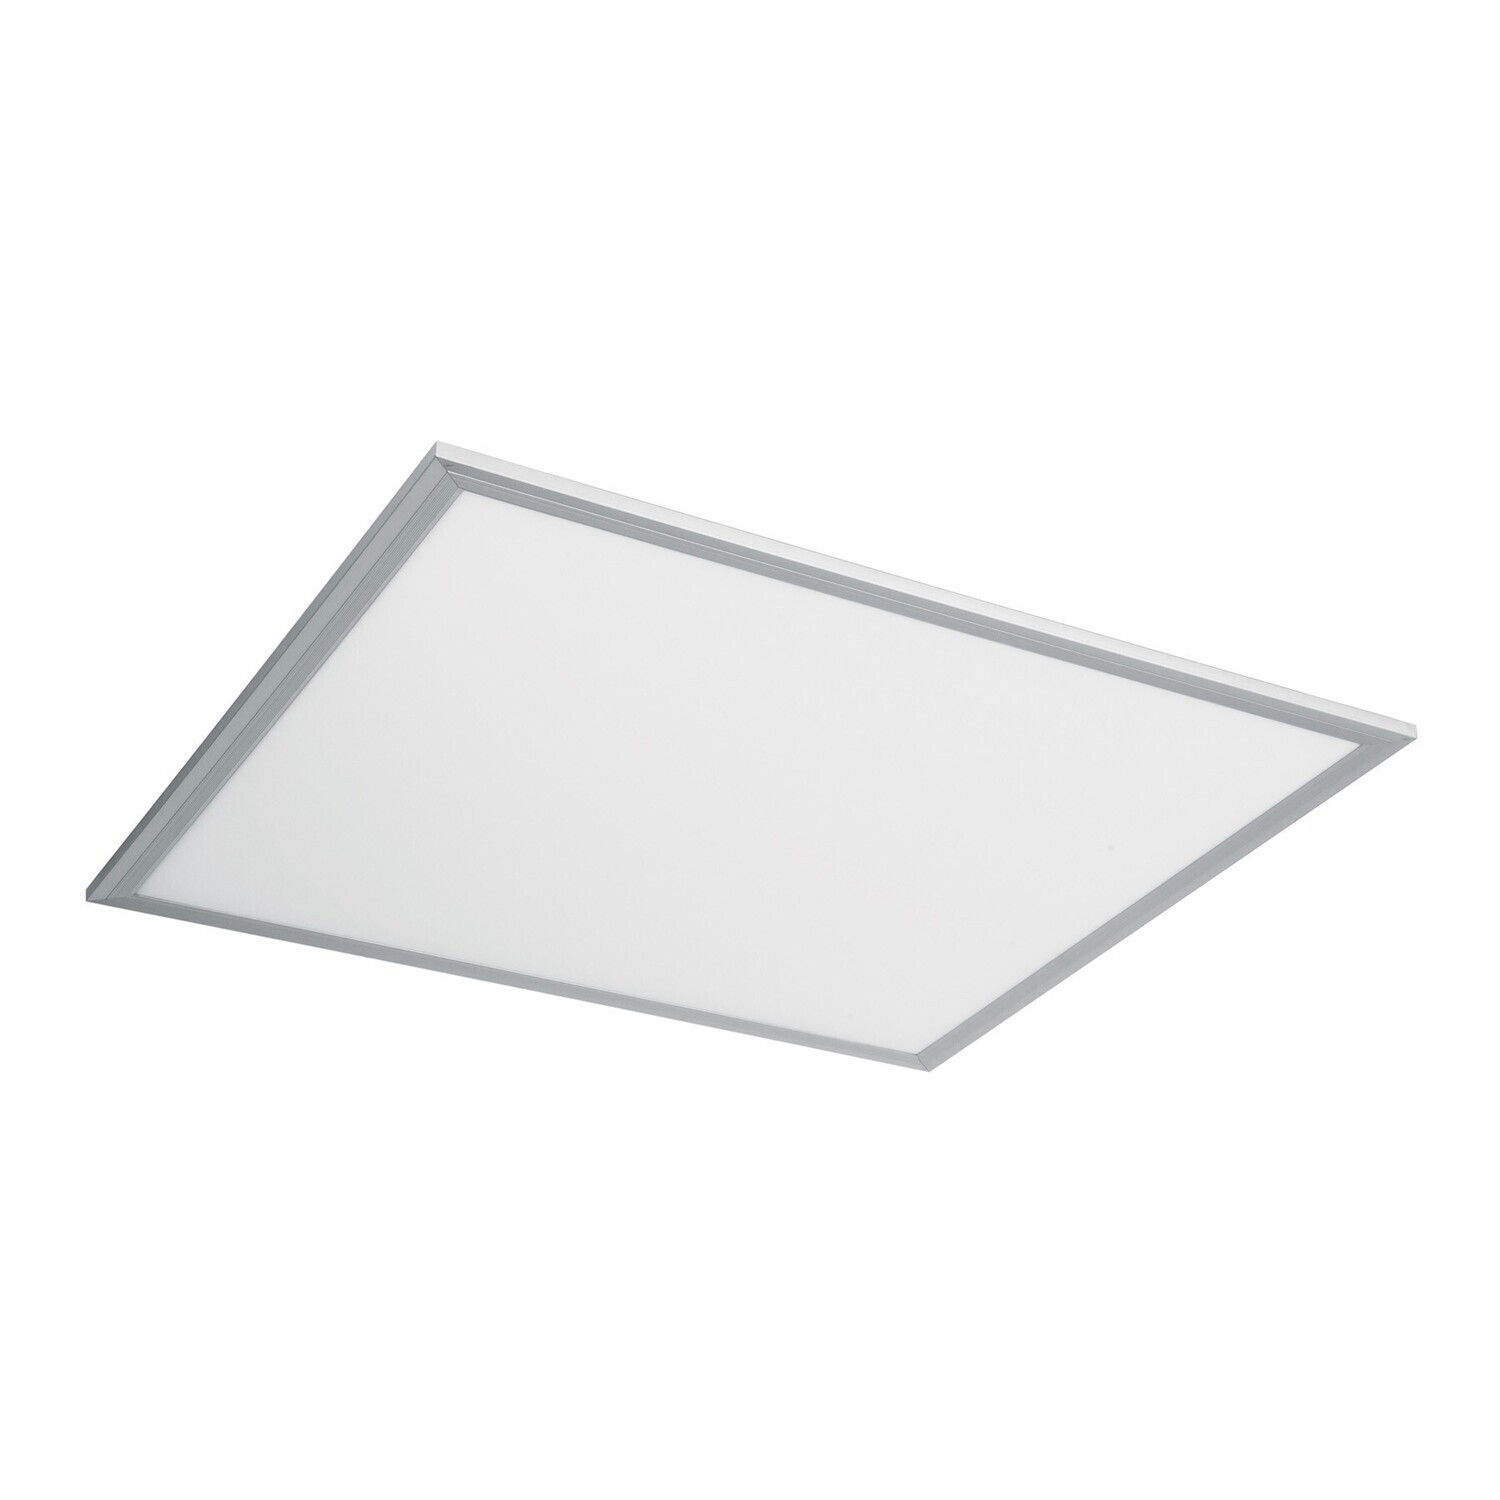 Incentivo Limpia el cuarto espacio Panel delgado colgante de LED 45 W 60 x 60 cm luz de día / código: 48549 /  clave: COL-400L